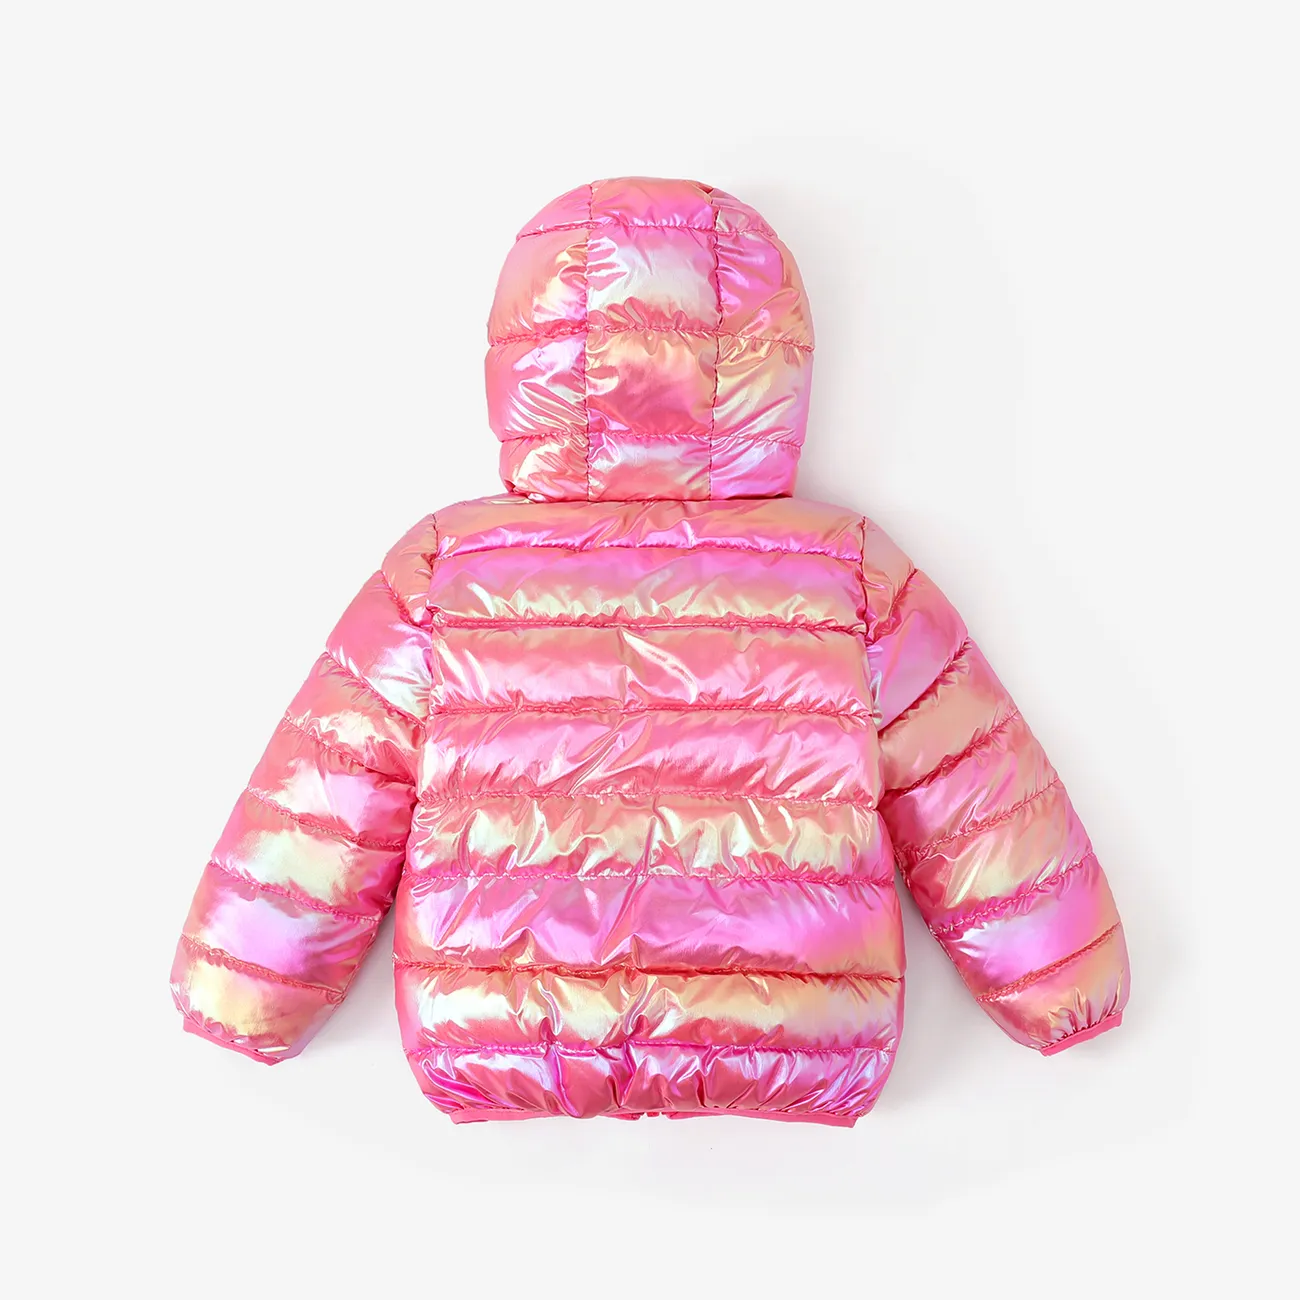  Toddler Boy/Girl Childlike 3D Ear Design Winter Coat Pink big image 1